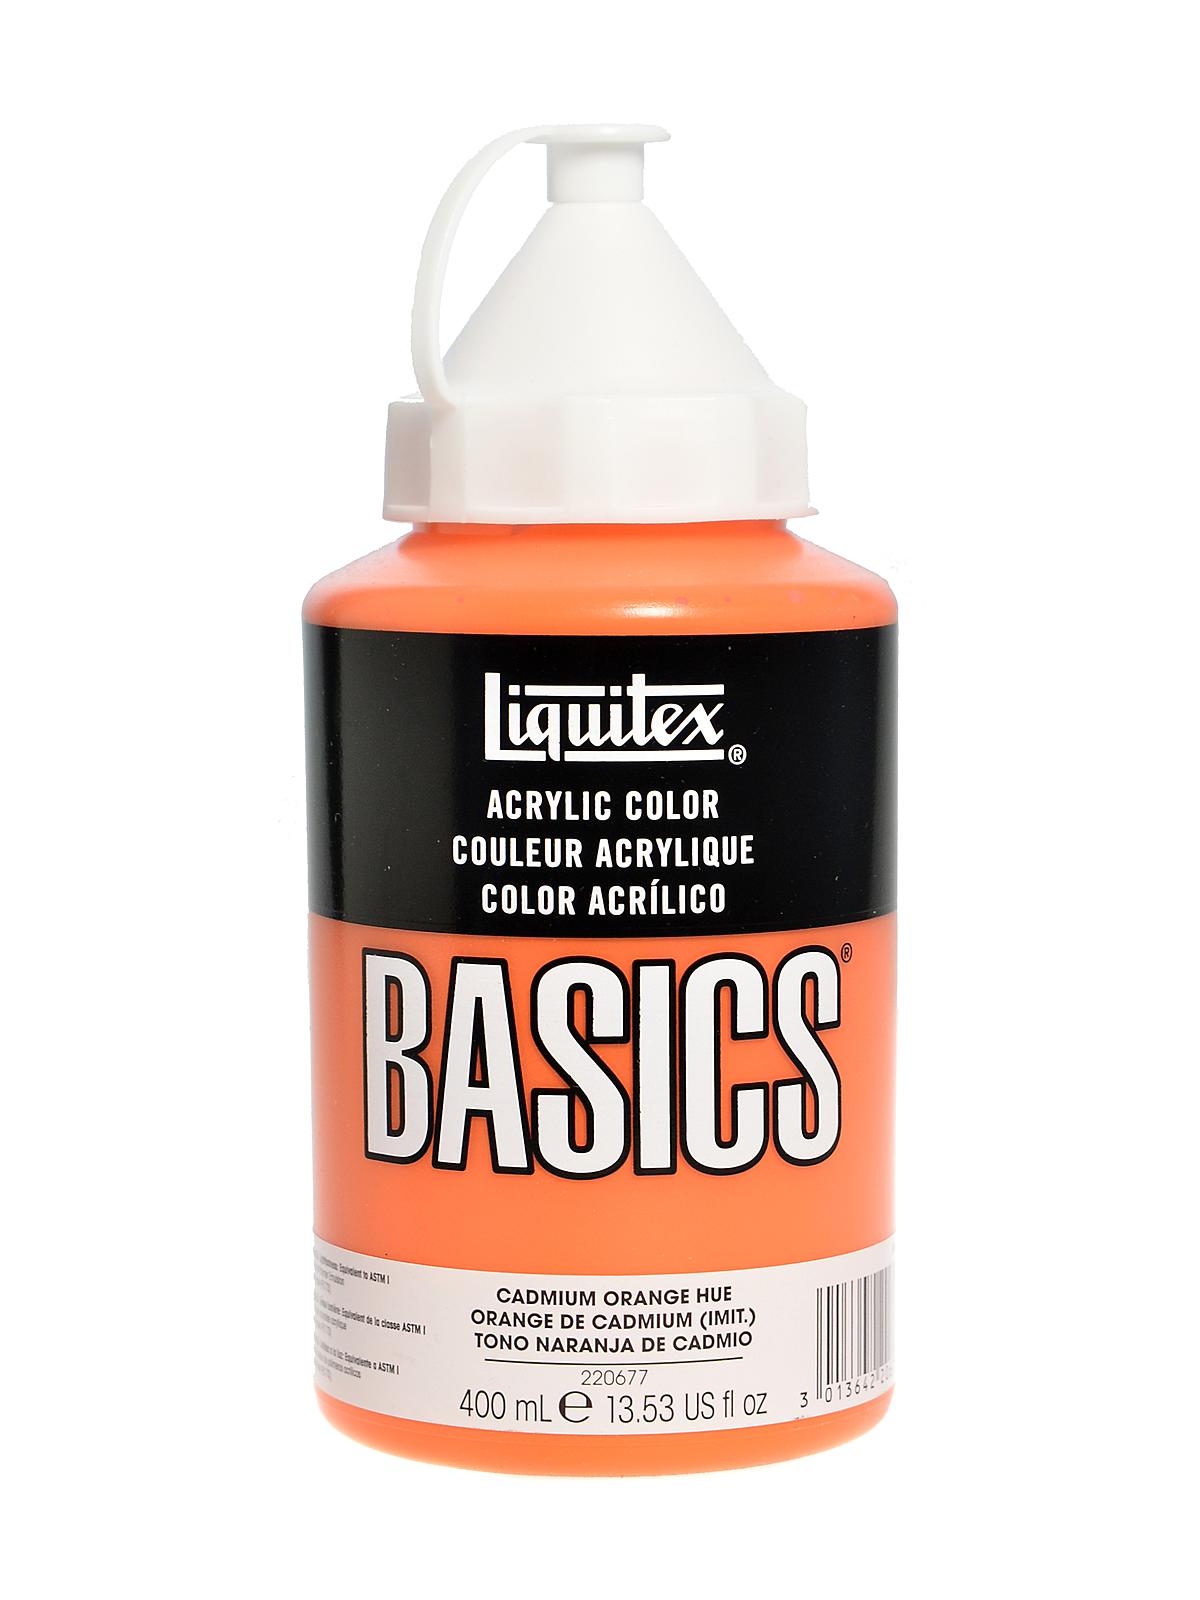 Basics Acrylics Colors Cadmium Orange Hue 13.5 Oz. Squeeze Bottle